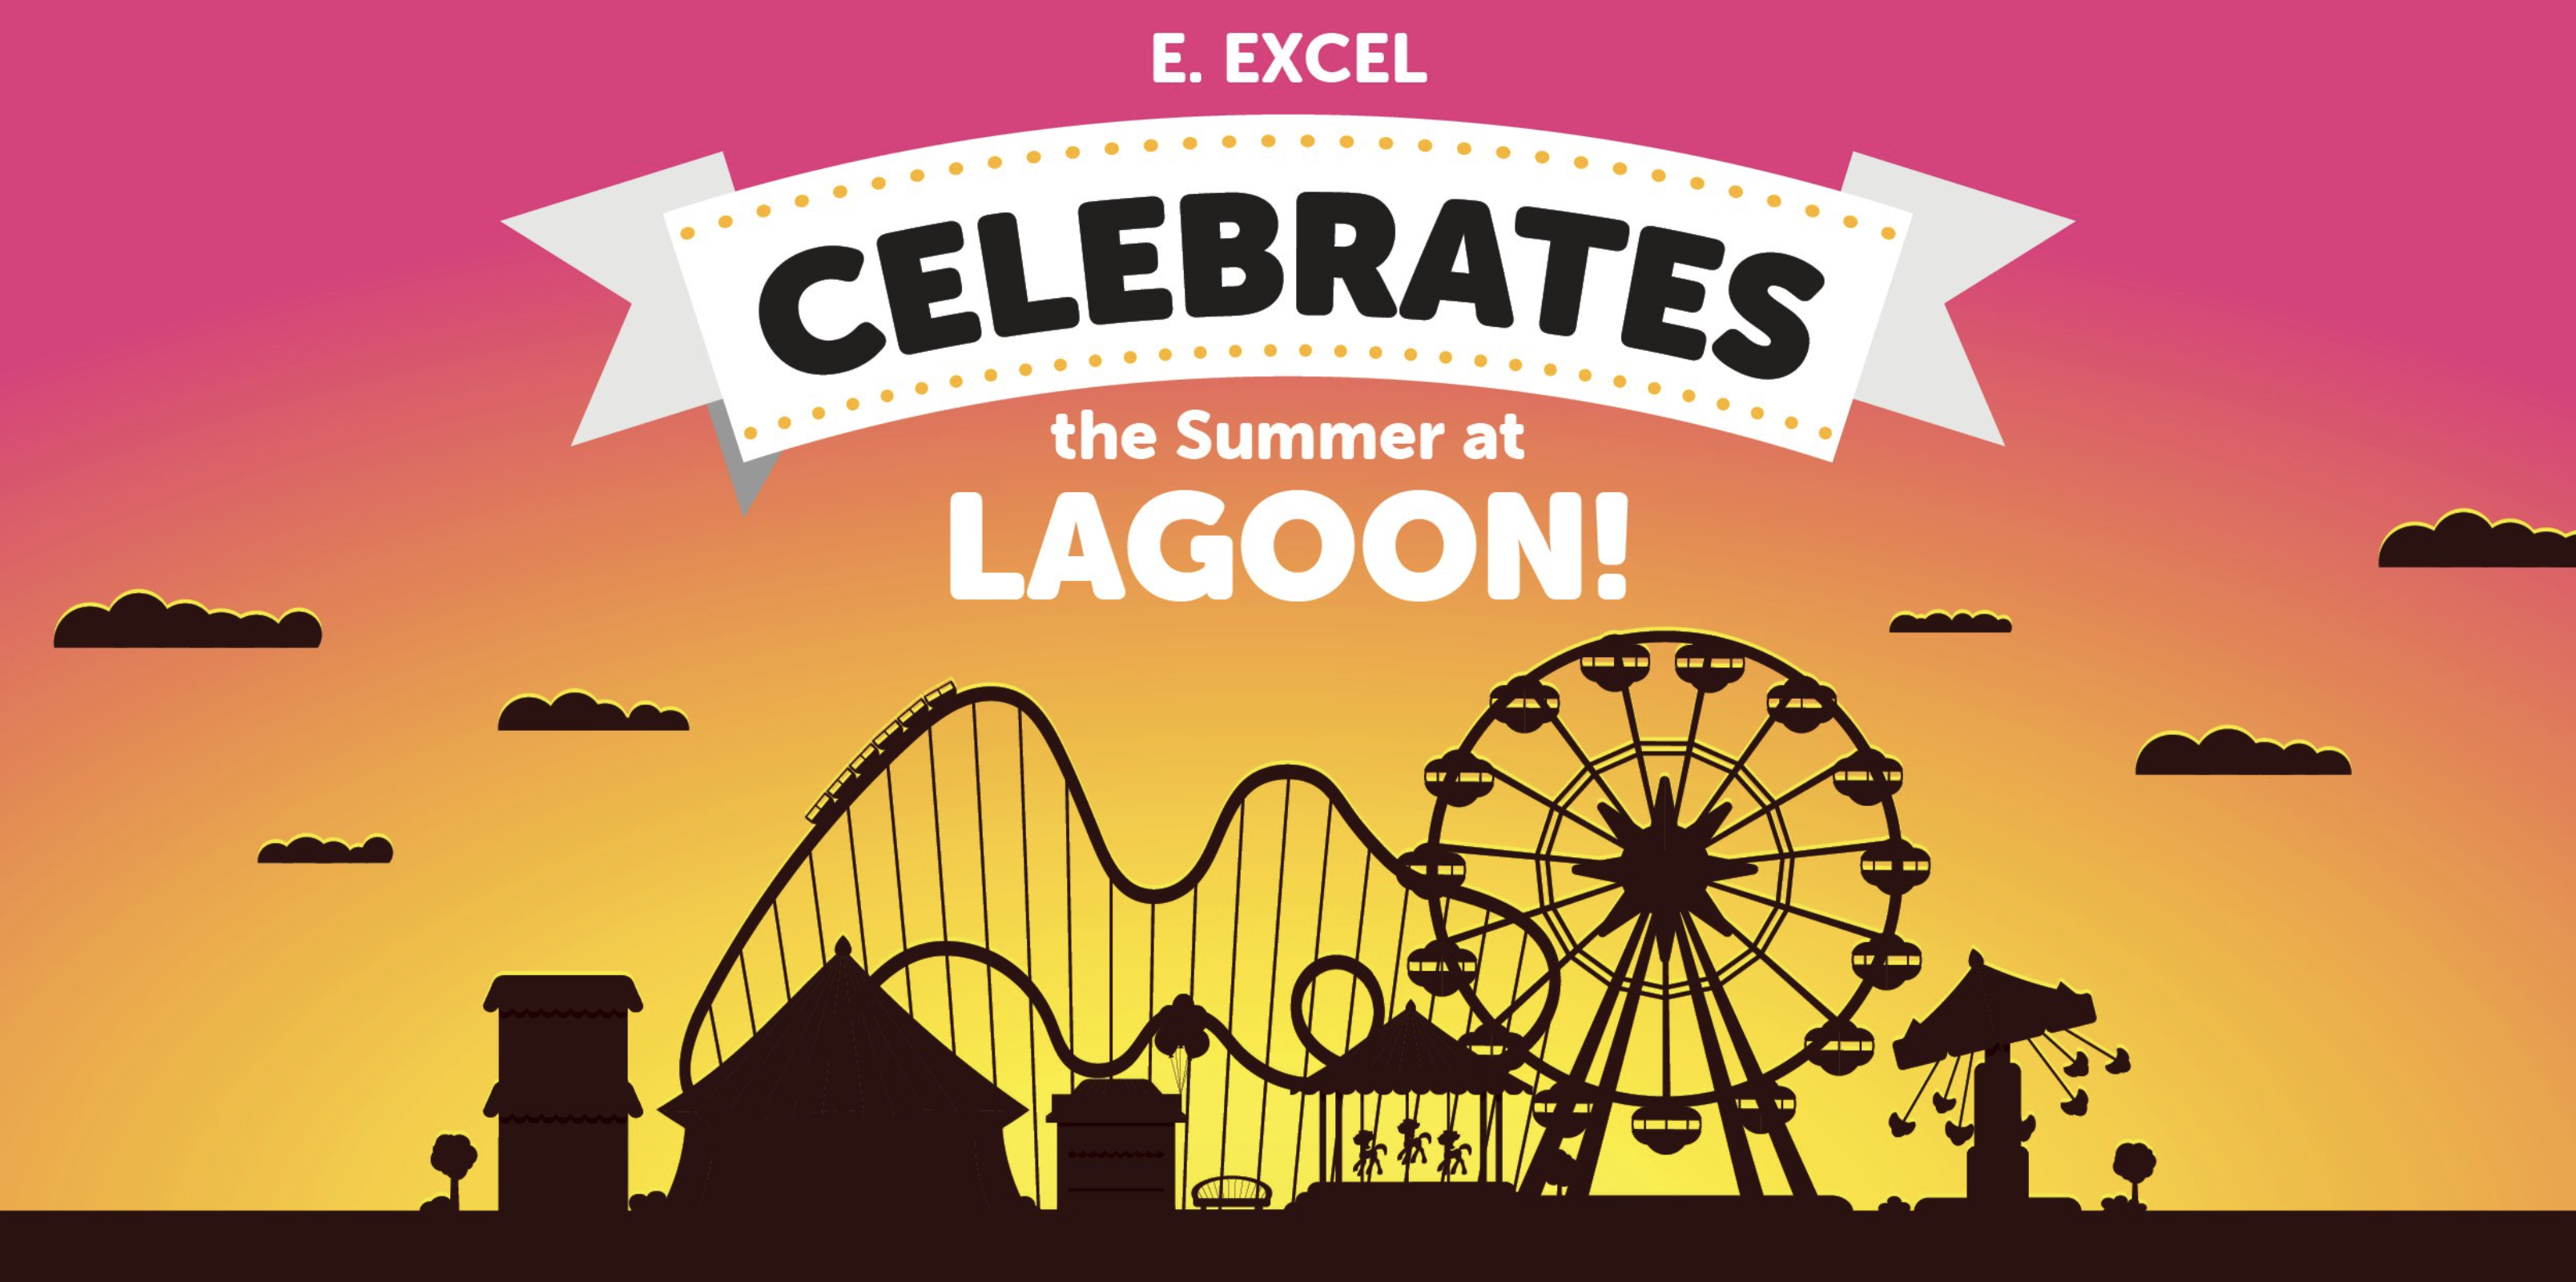 E. EXCEL Celebrates at Lagoon